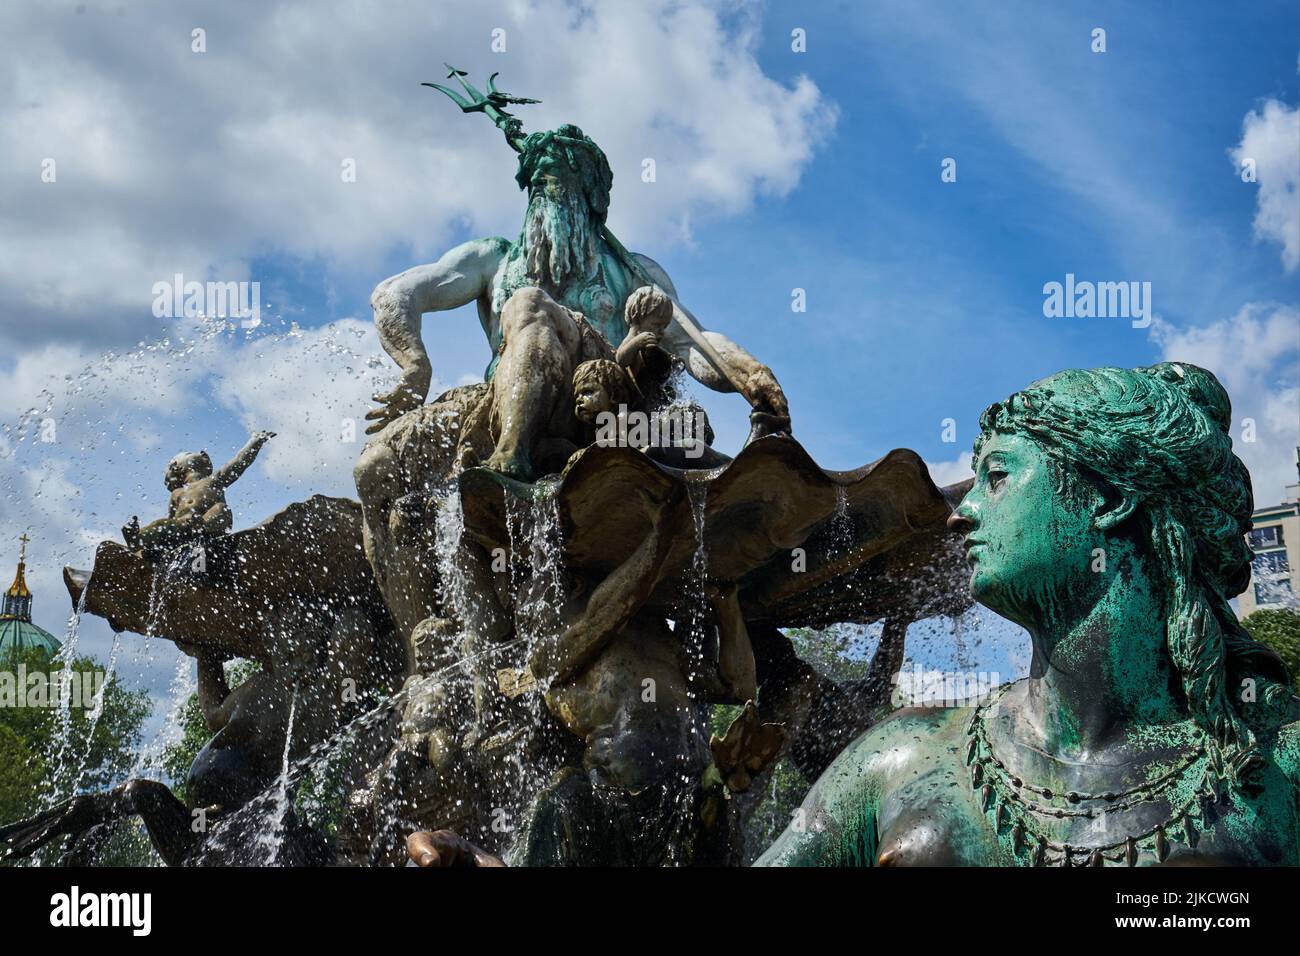 Frauenfigur, Darstellung von dem Fluss Rhein, links Neptun mit Dreizack auf einer Muschelschale, Neptunbrunnen, Berlin, Deutschland Stock Photo